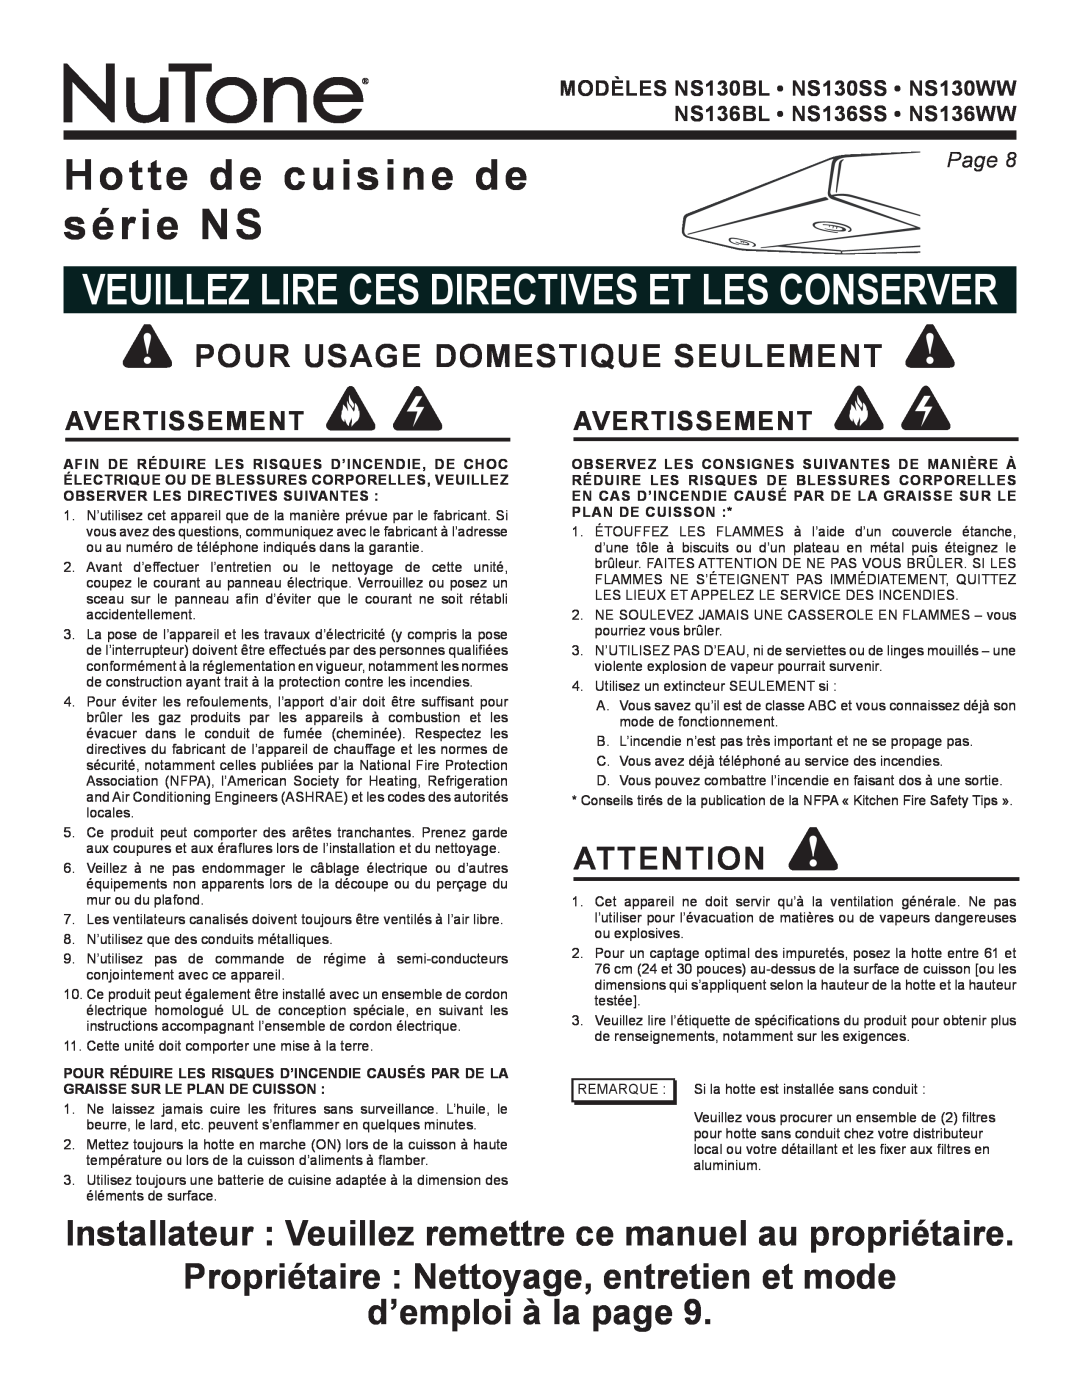 NuTone NS136SS warranty Hotte de cuisine de série NS, Propriétaire Nettoyage, entretien et mode, d’emploi à la page, Page  